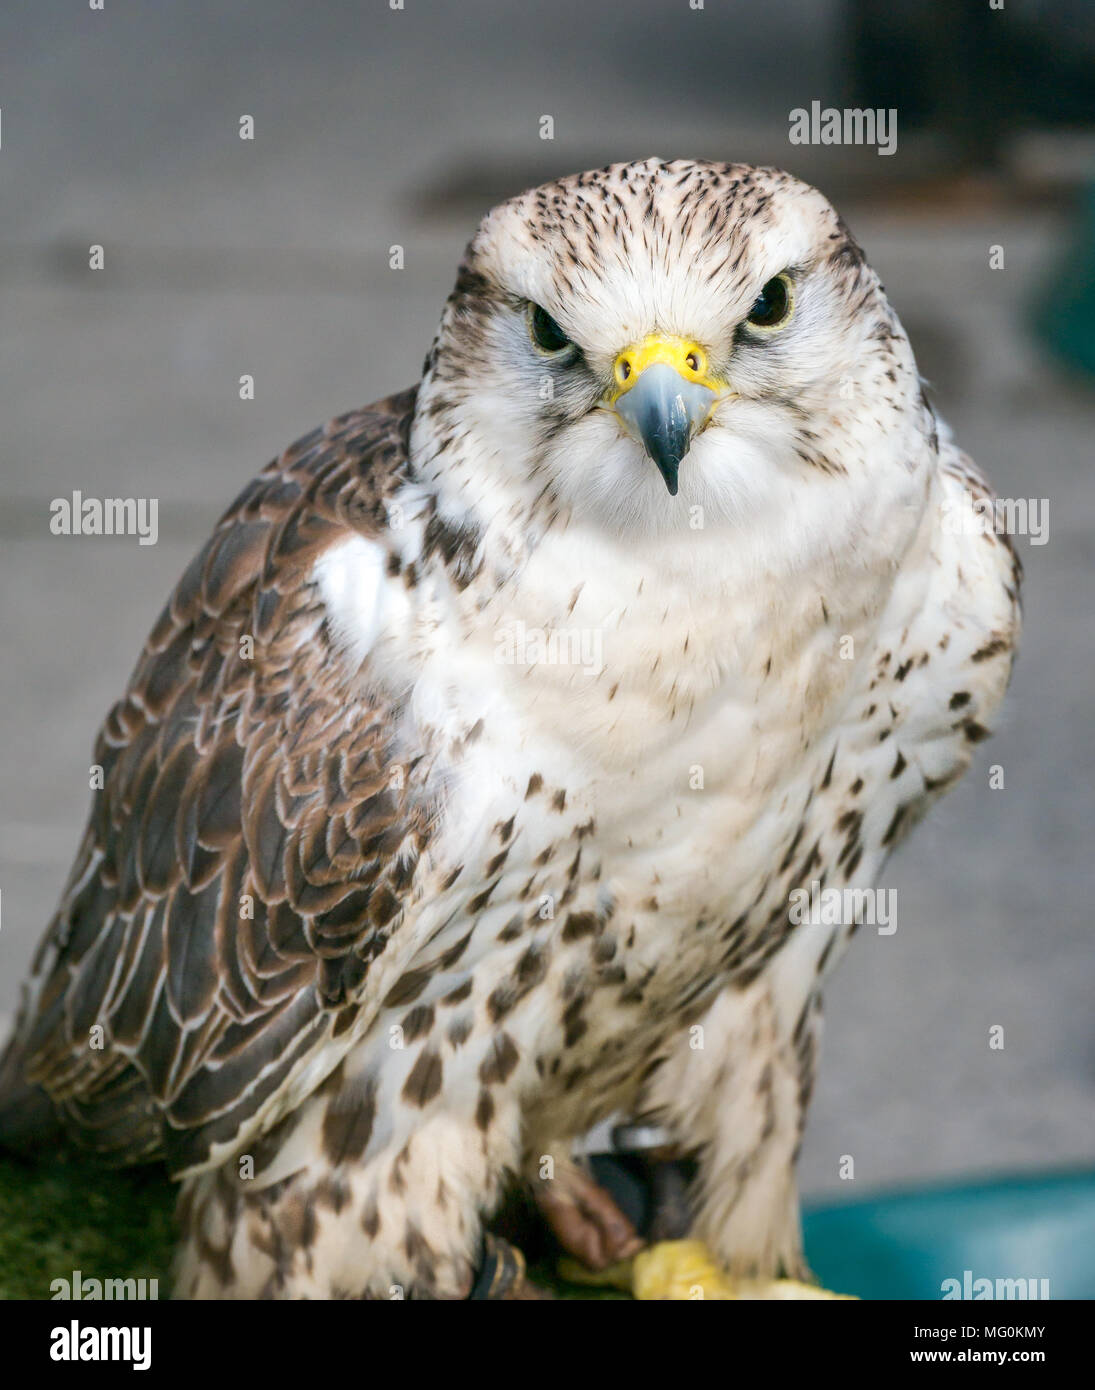 Nahaufnahme des gefangenen Falken, Falco Cherrug, Greifvogels Stockfoto